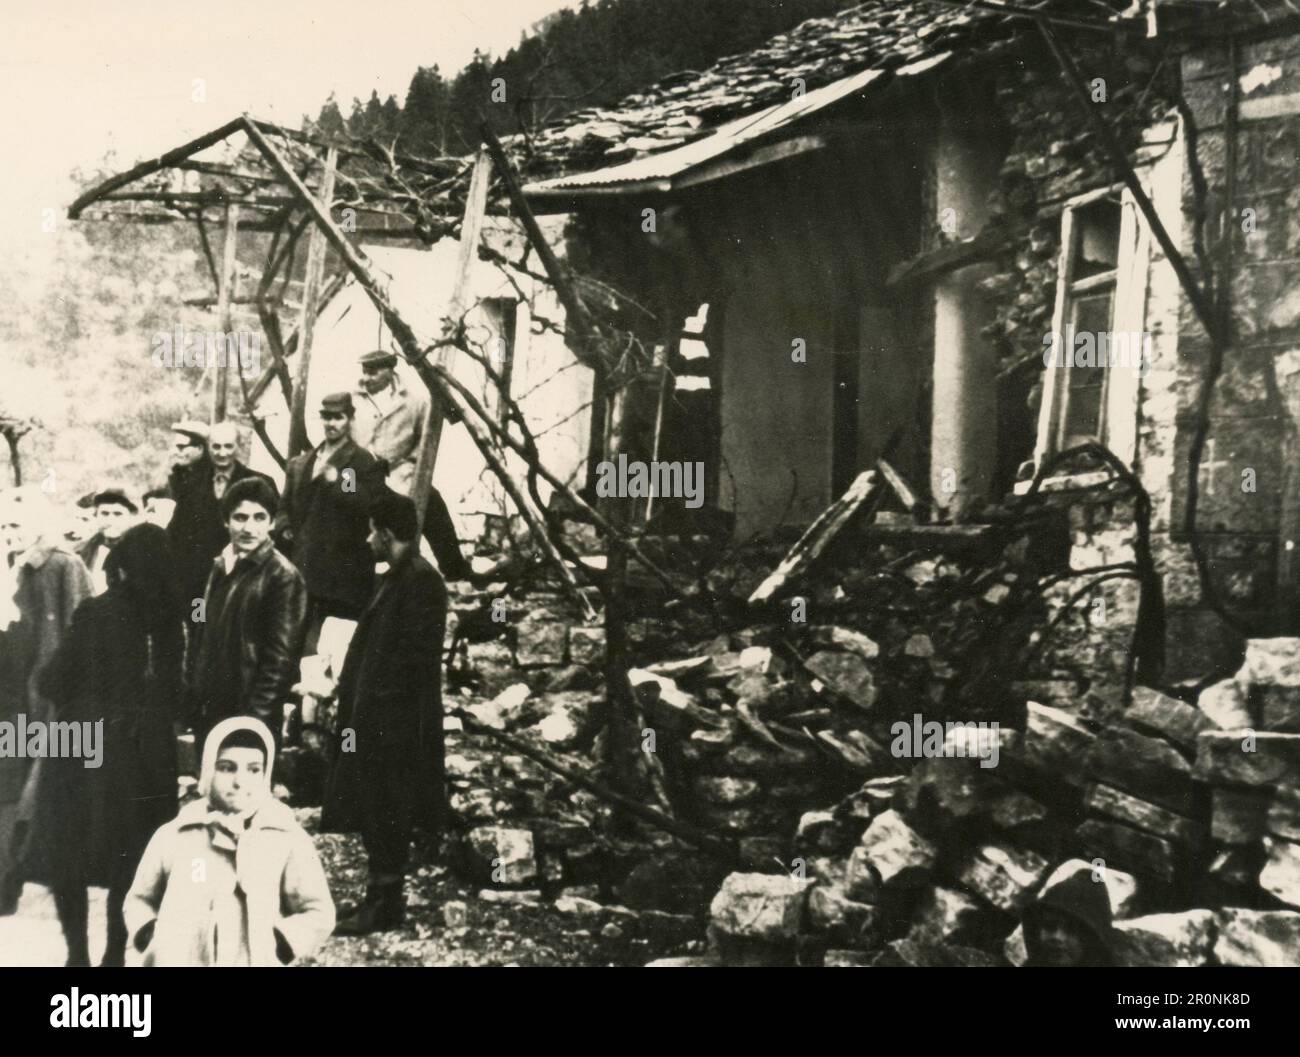 Villageois de Stenoma parmi les ruines de leurs maisons après le tremblement de terre, Evrytania, GRECE 1966 Banque D'Images